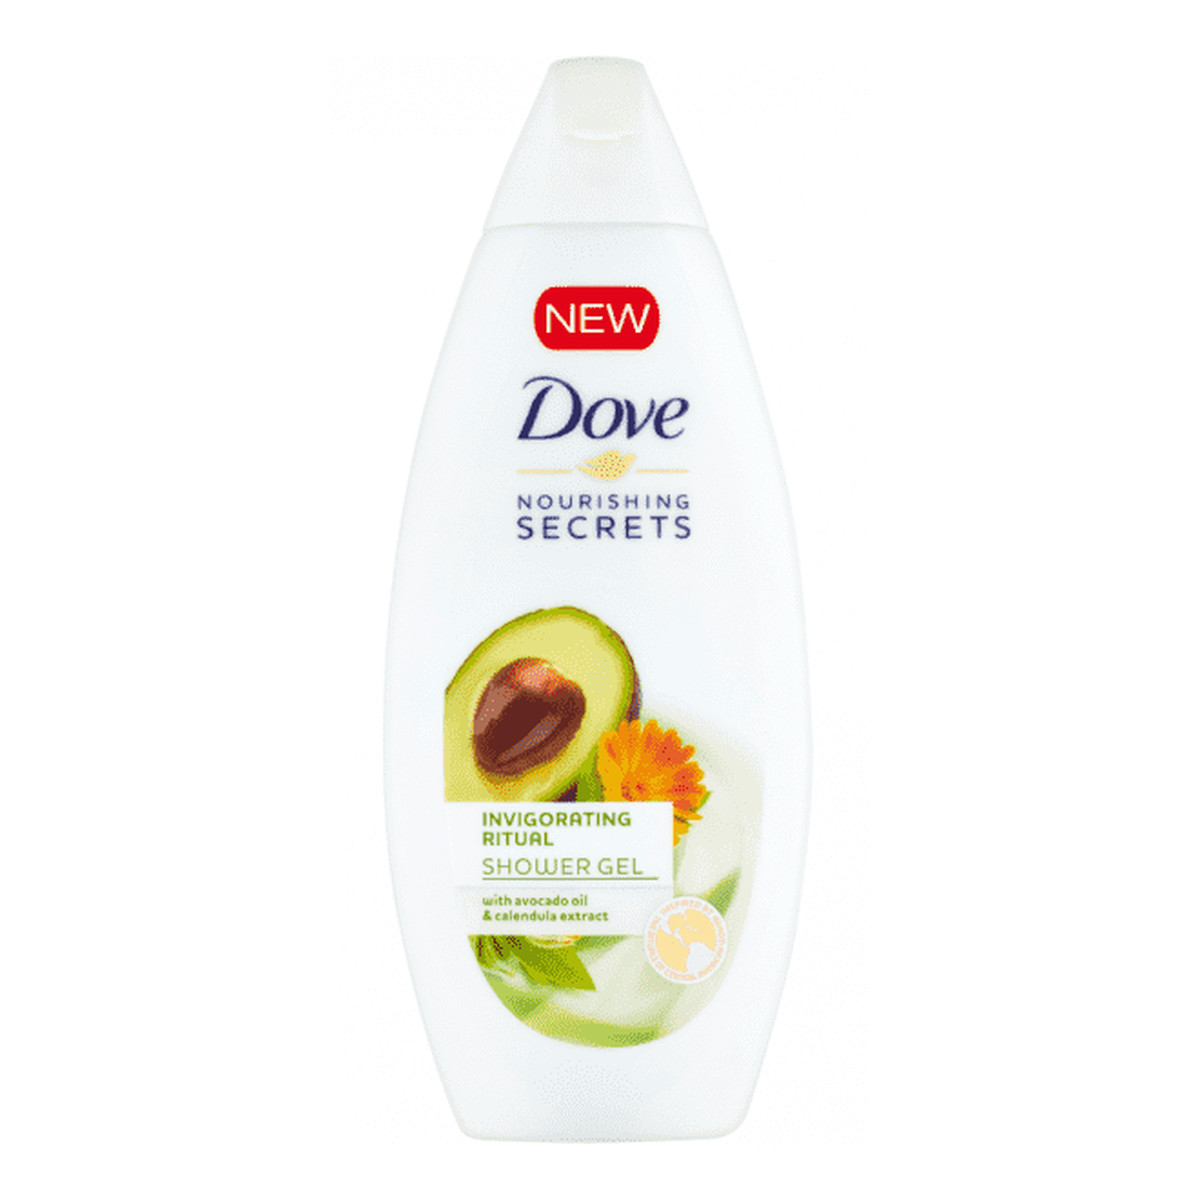 Dove Nourishing Secrets orzeźwiający żel pod prysznic Avocado Oil & Calendula Extract 250ml